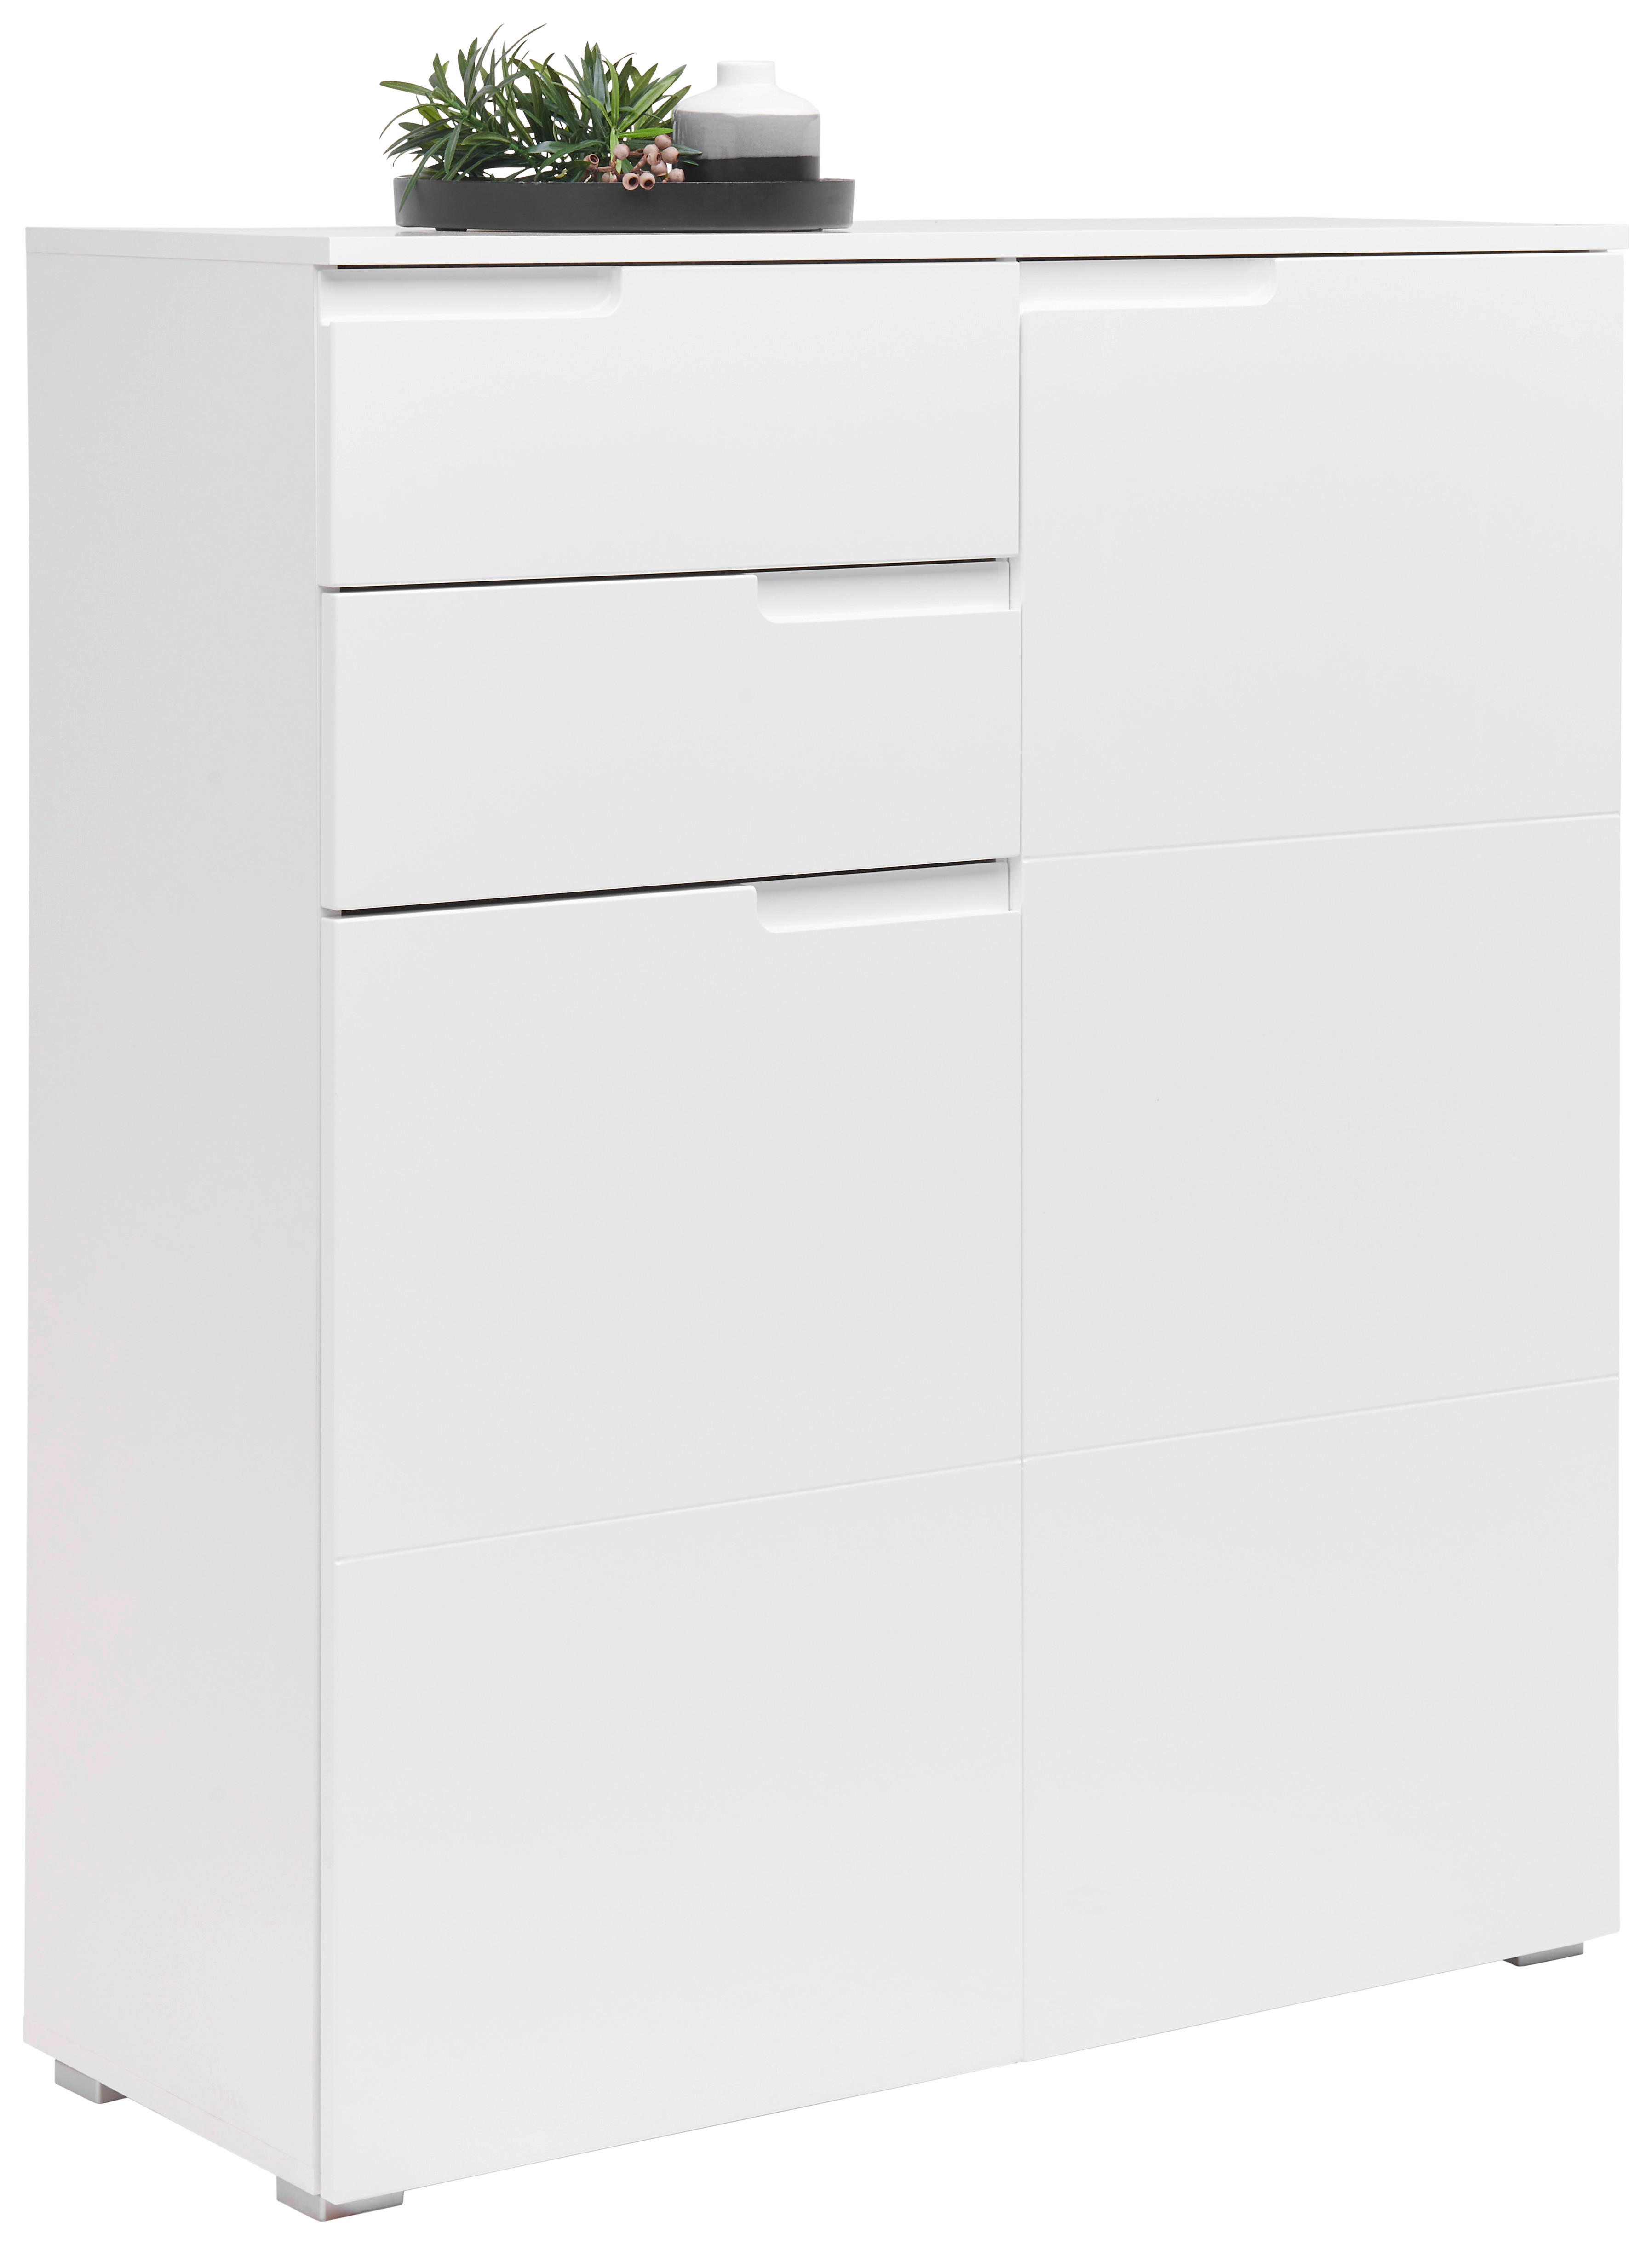 KOMMODE Weiß  - Silberfarben/Weiß, Design, Holzwerkstoff/Kunststoff (100/119/40cm) - Carryhome